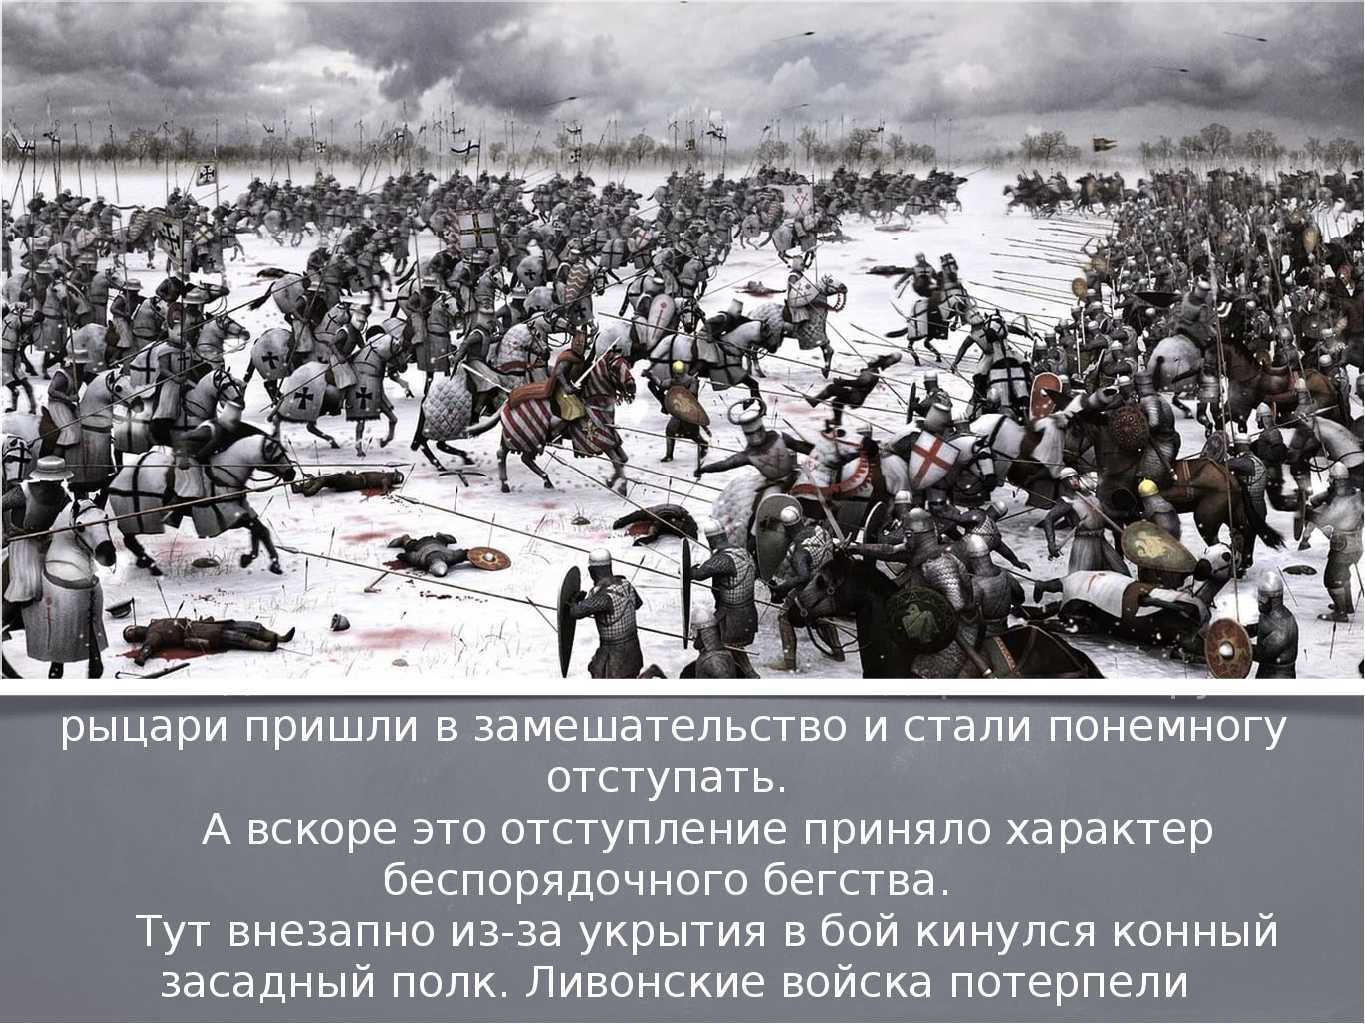 Битва на озере когда была. Битва Ледовое побоище 1242. 1242 Ледовое побоище князь. Ледовое побоище битва на Чудском озере.